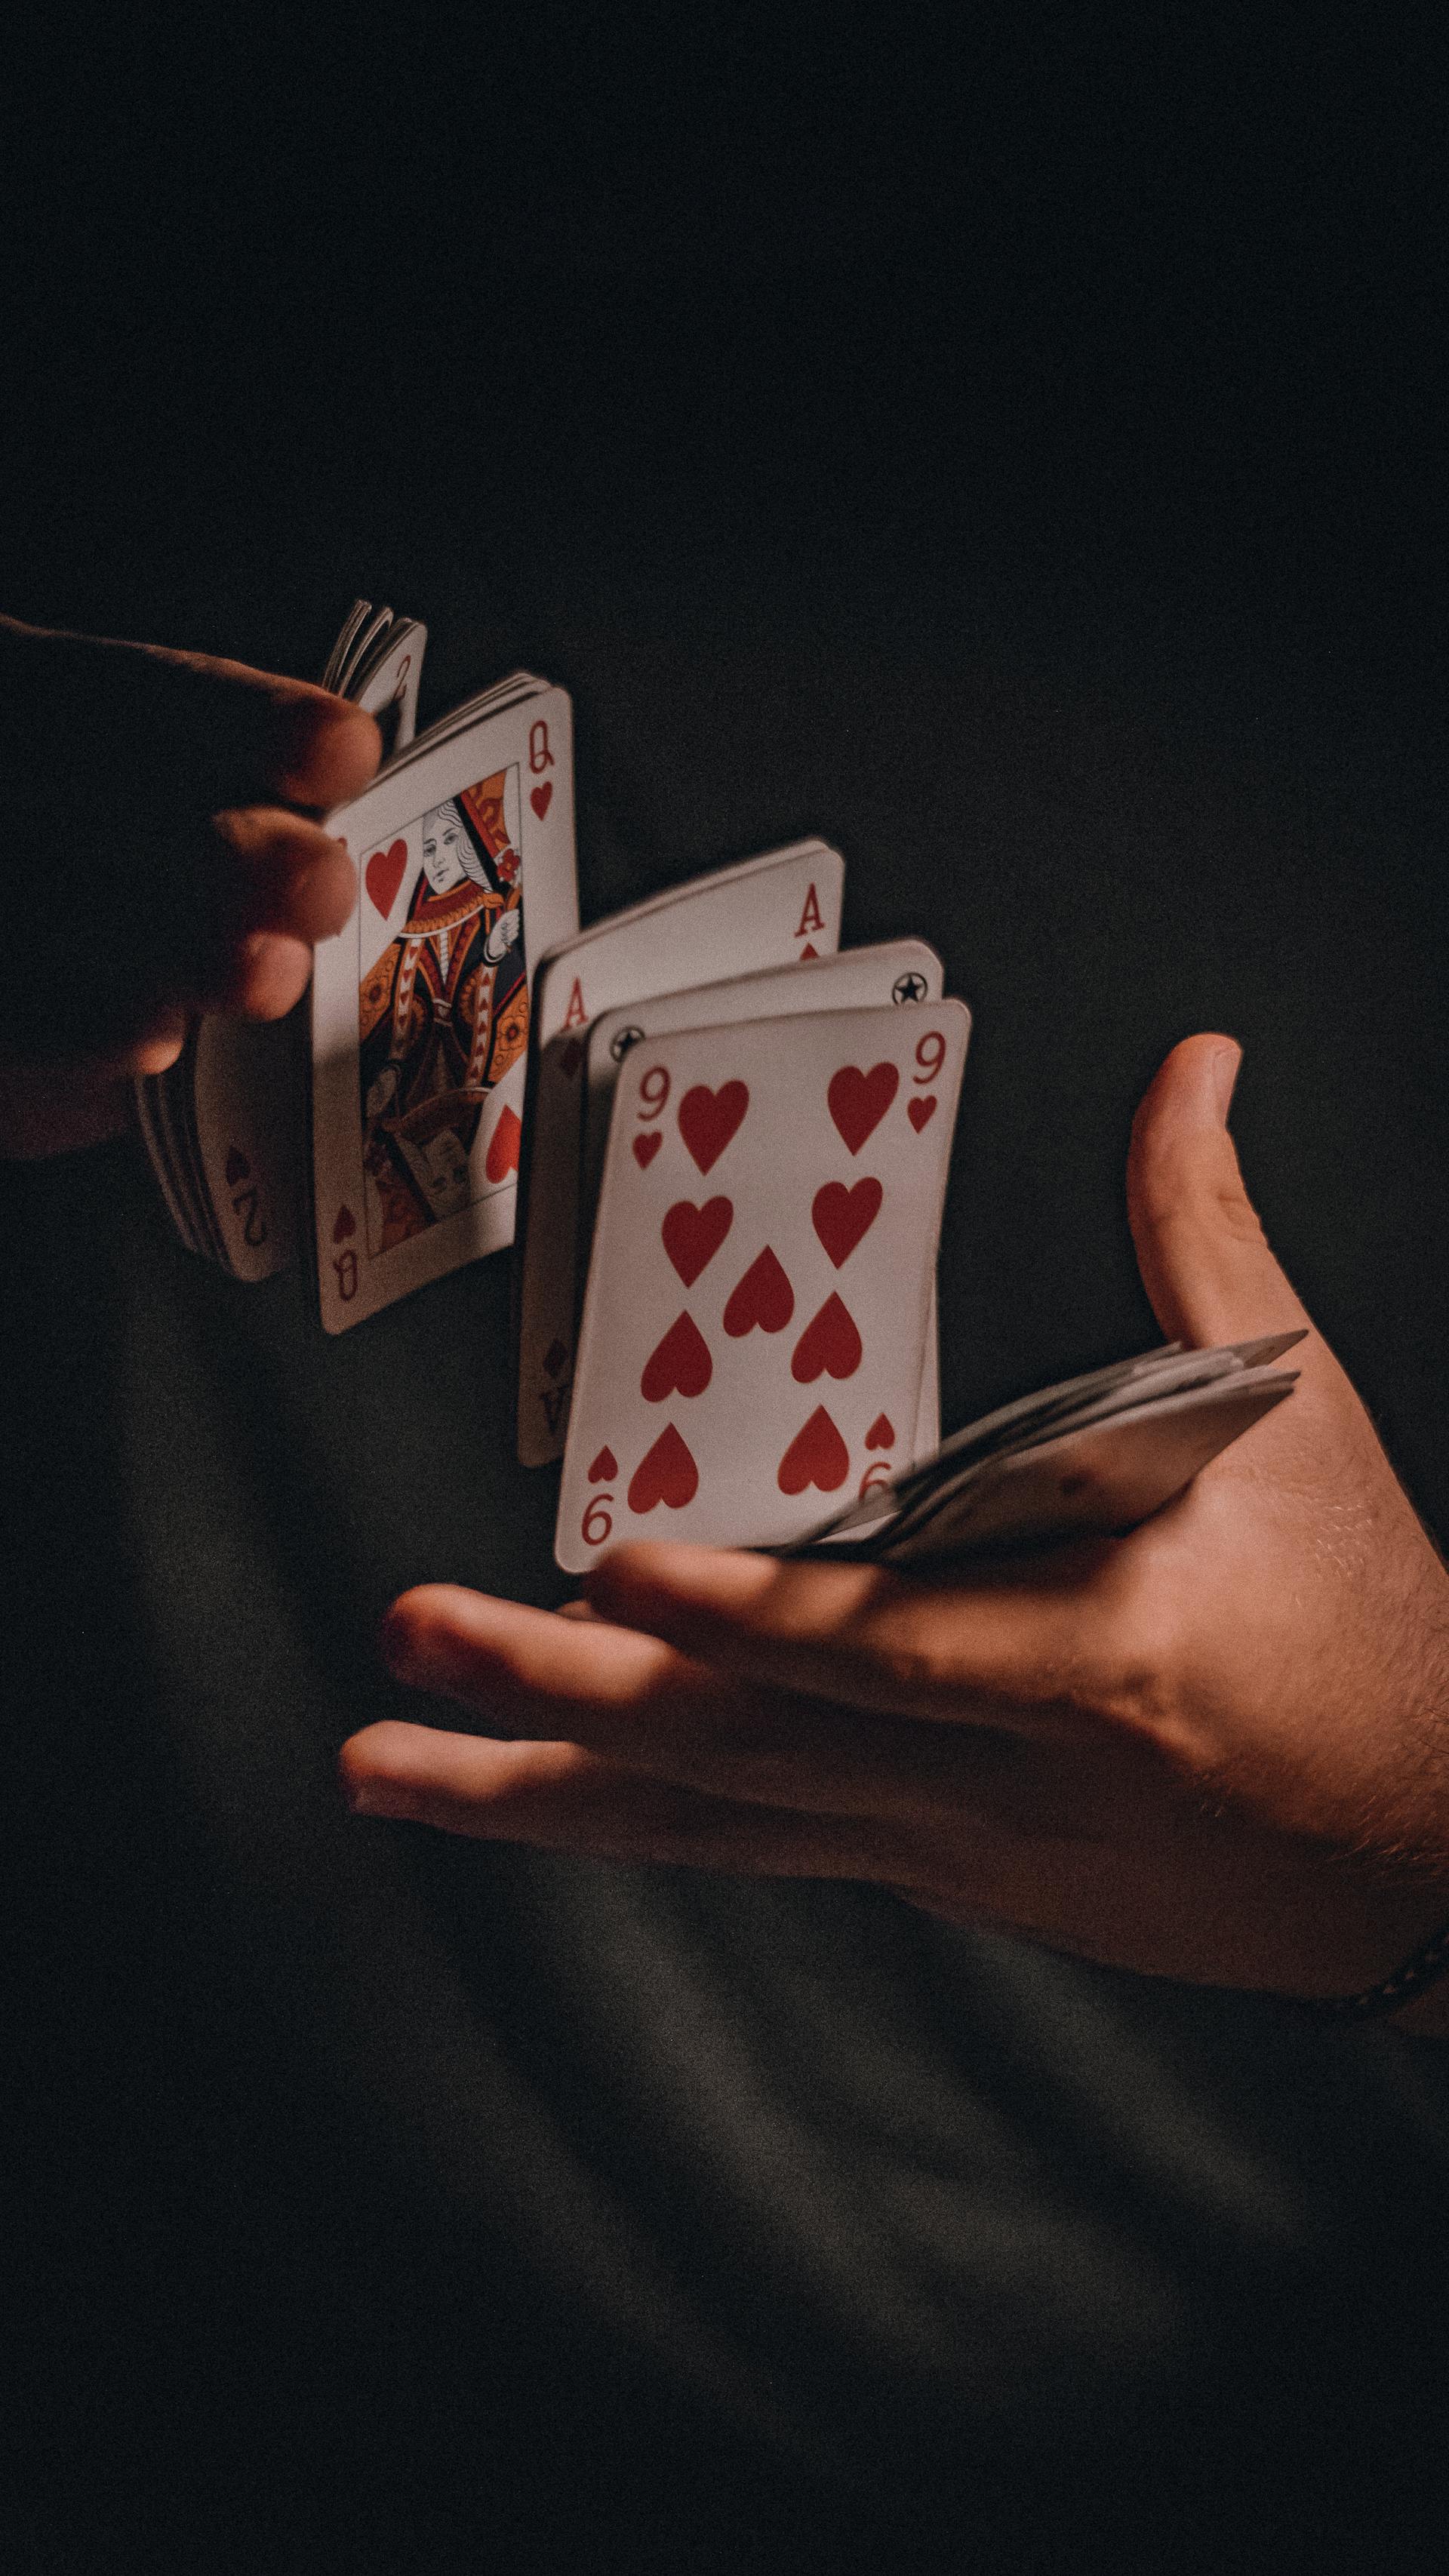 Una persona barajando cartas | Fuente: Pexels